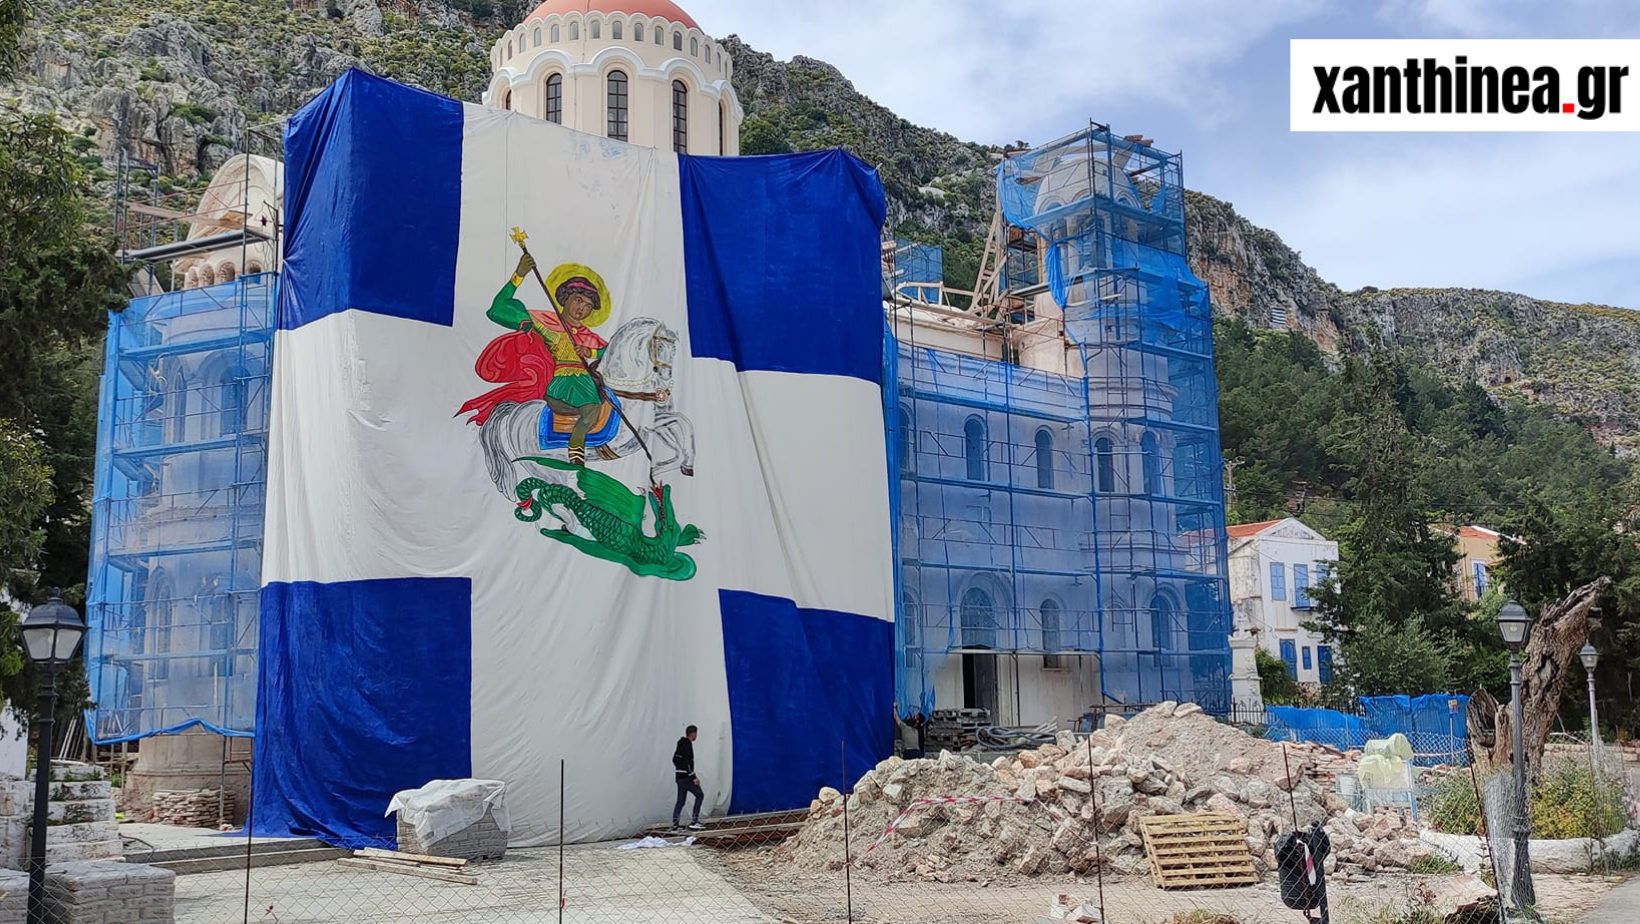 Καστελλόριζο: Ύψωσαν γιγάντια σημαία με τον Άγιο Γεώργιο